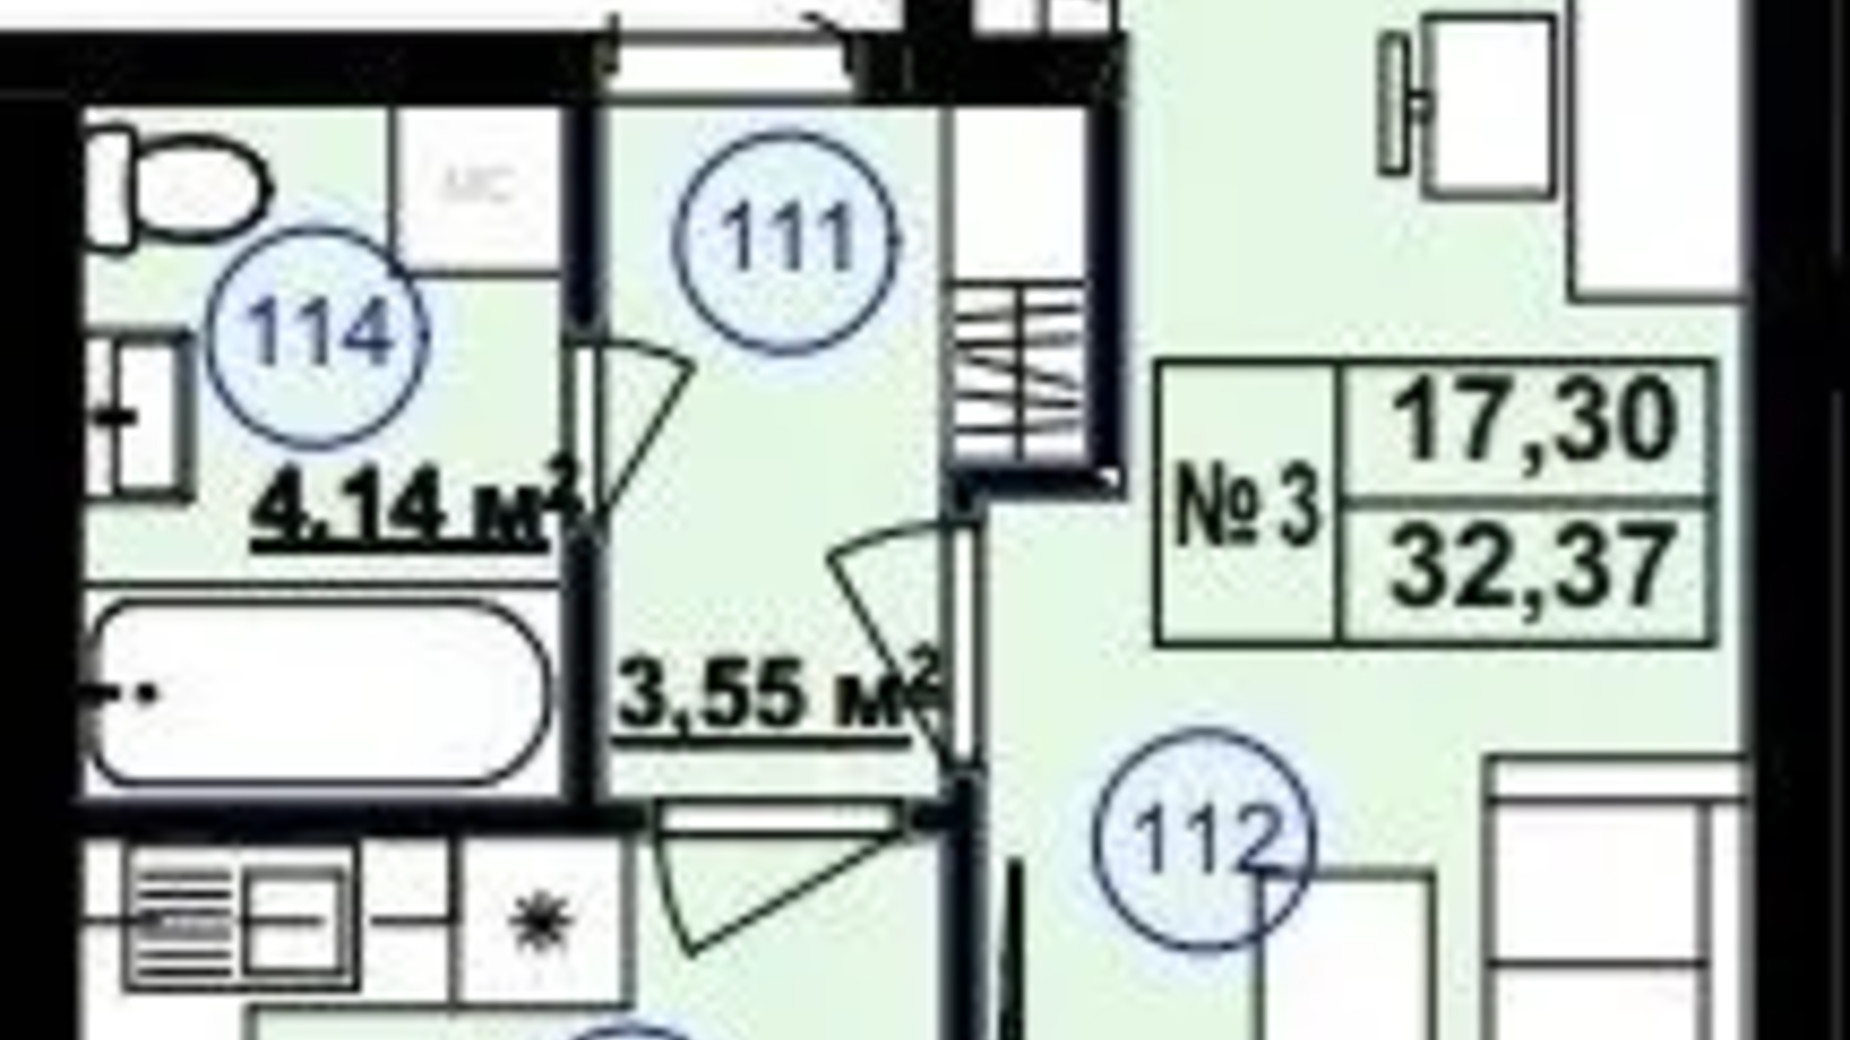 Планування 1-кімнатної квартири в Клубний будинок Софія 2 32.37 м², фото 617260